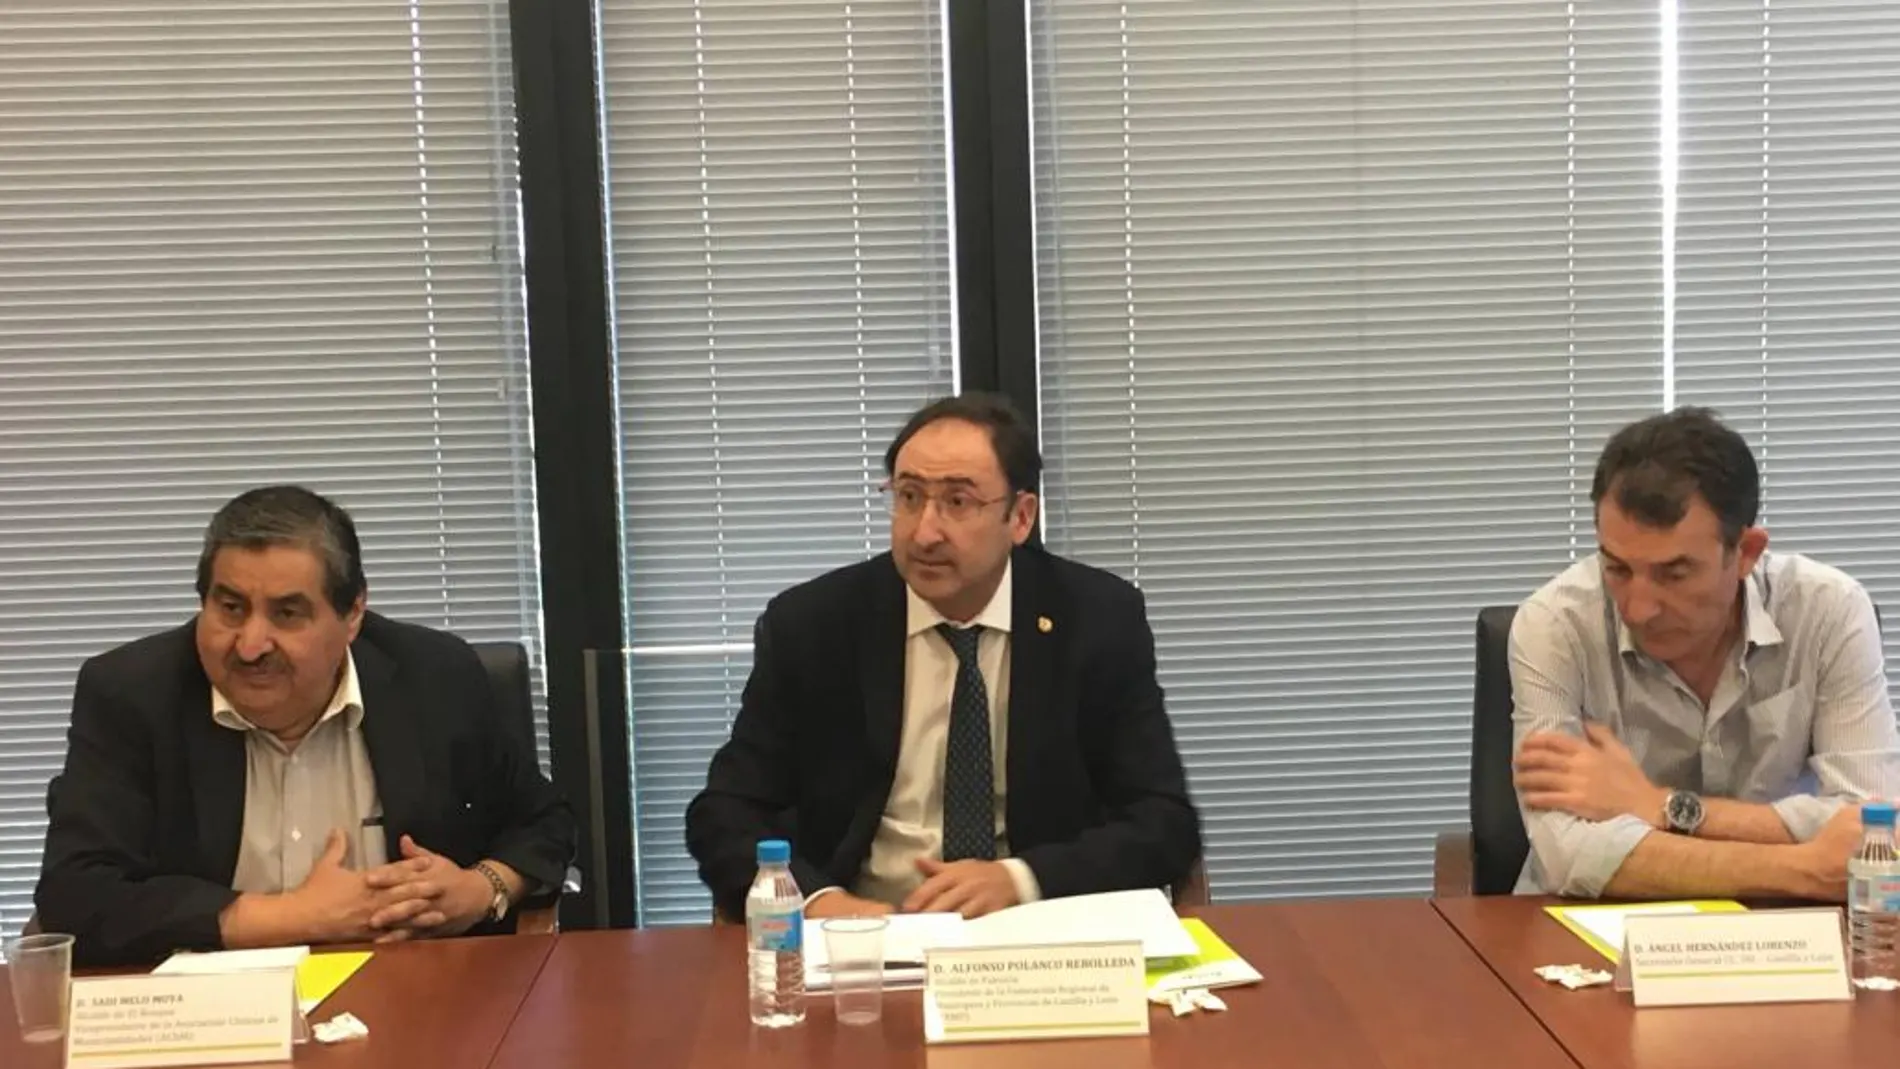 Sadi Melo, Alfonso Polanco y Ángel Hernández durante el encuentro celebrado en la sede de la FRMP, en Valladolid